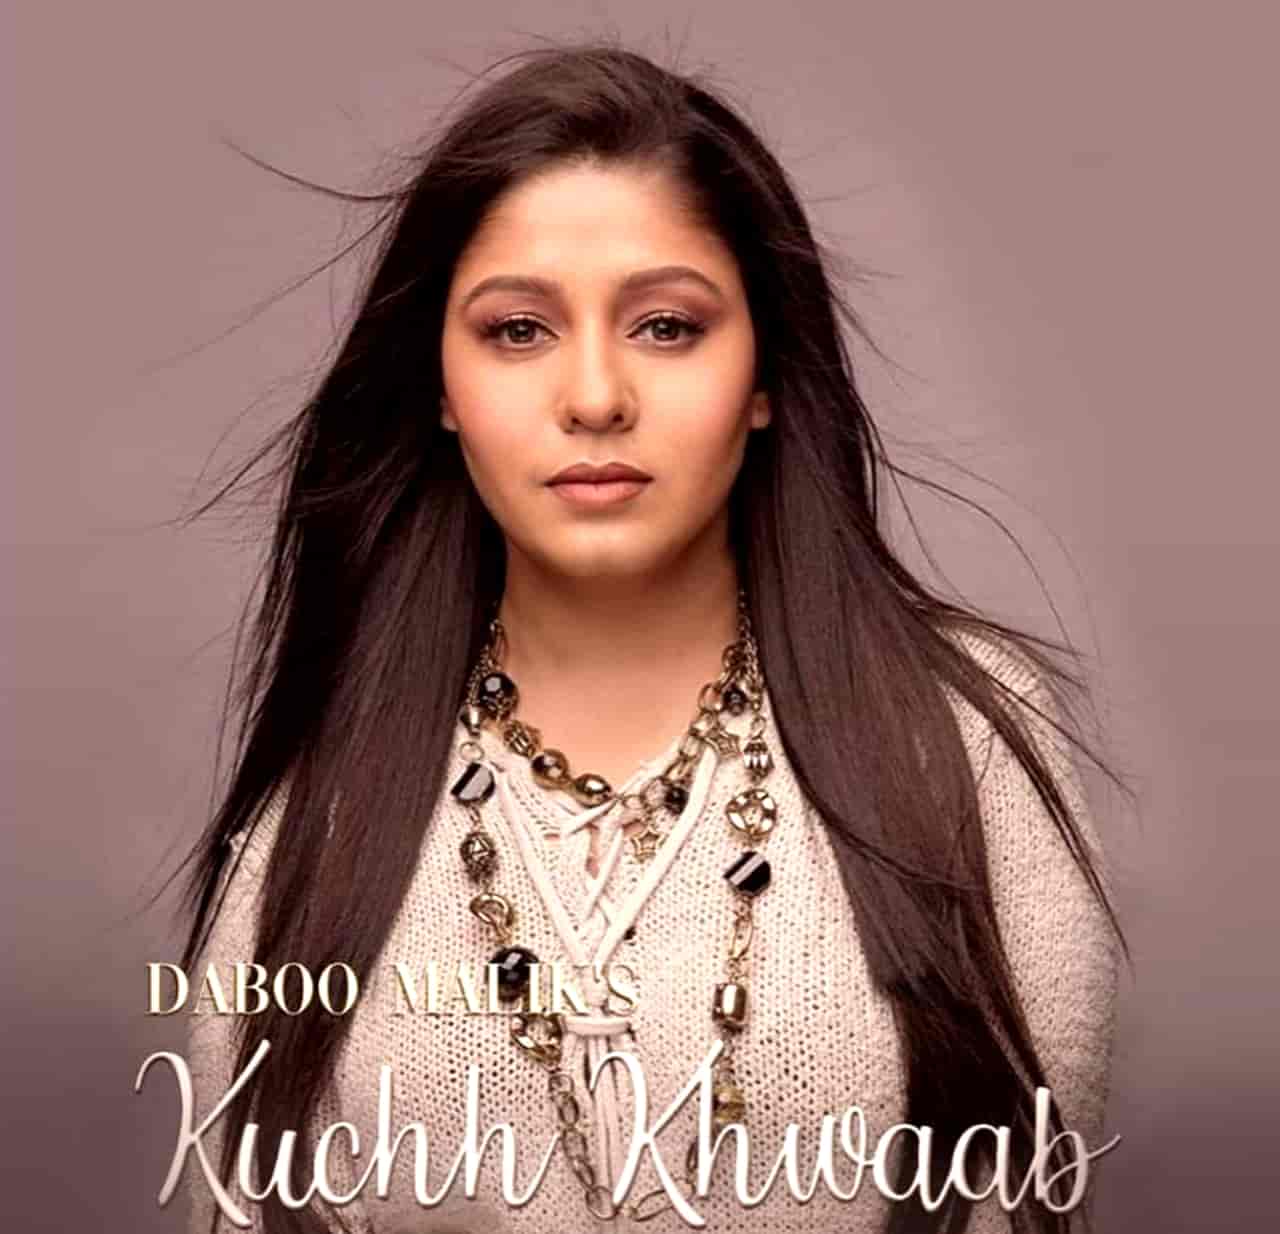 Kuchh Khwaab Hindi Song Image Features Sunidhi Chauhan